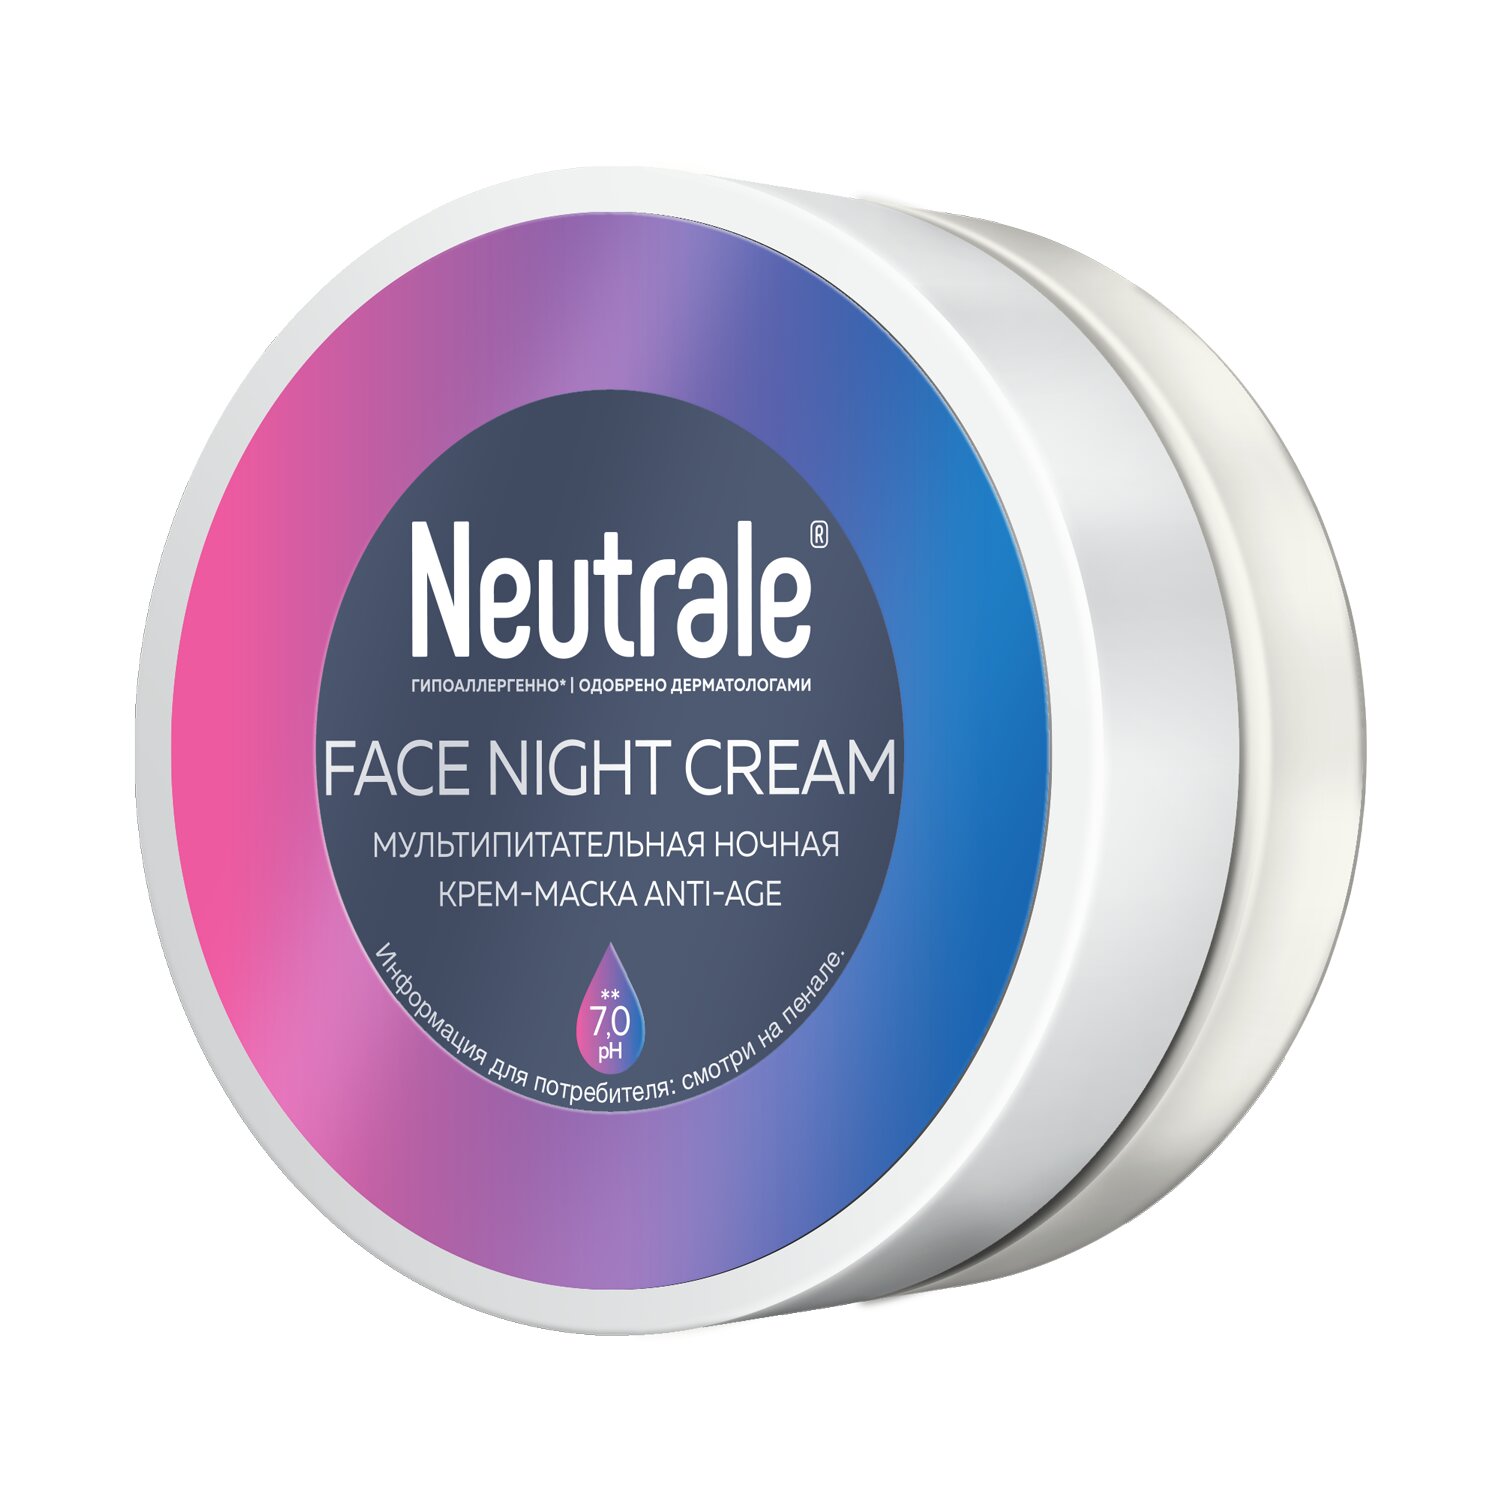 фото Крем-маска для лица neutrale мультипитательная ночная несмываемая anti-age, 50 мл